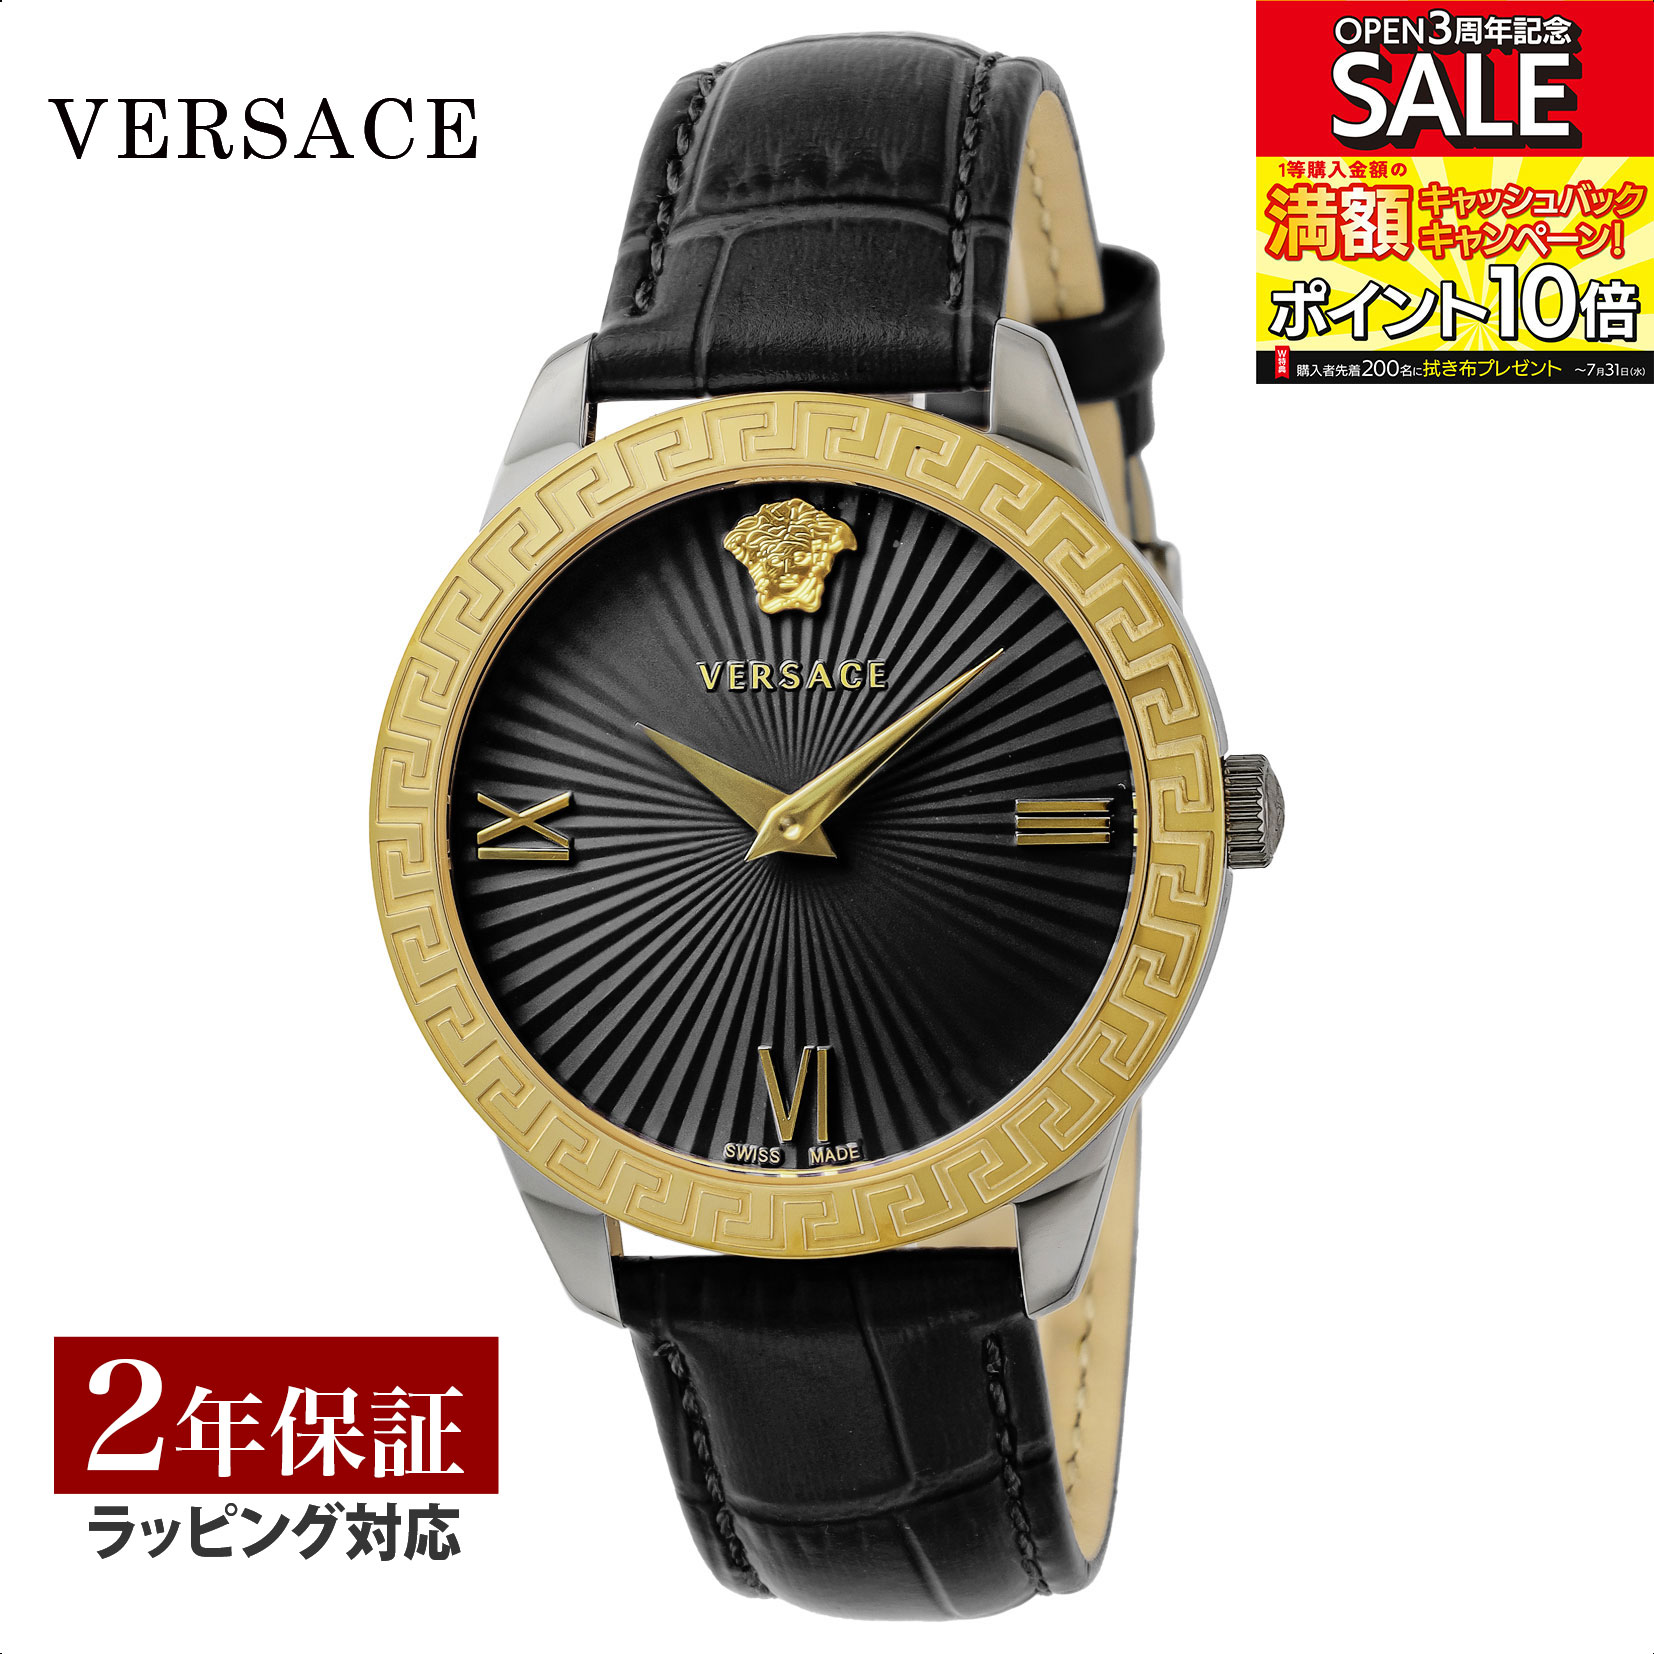 ヴェルサーチェ 腕時計（メンズ） ヴェルサーチェ VERSACE ユニセックス 時計 グレカ シグネチャー Greca Signature クォーツ ブラック VEVC00319 腕時計 高級腕時計 ブランド